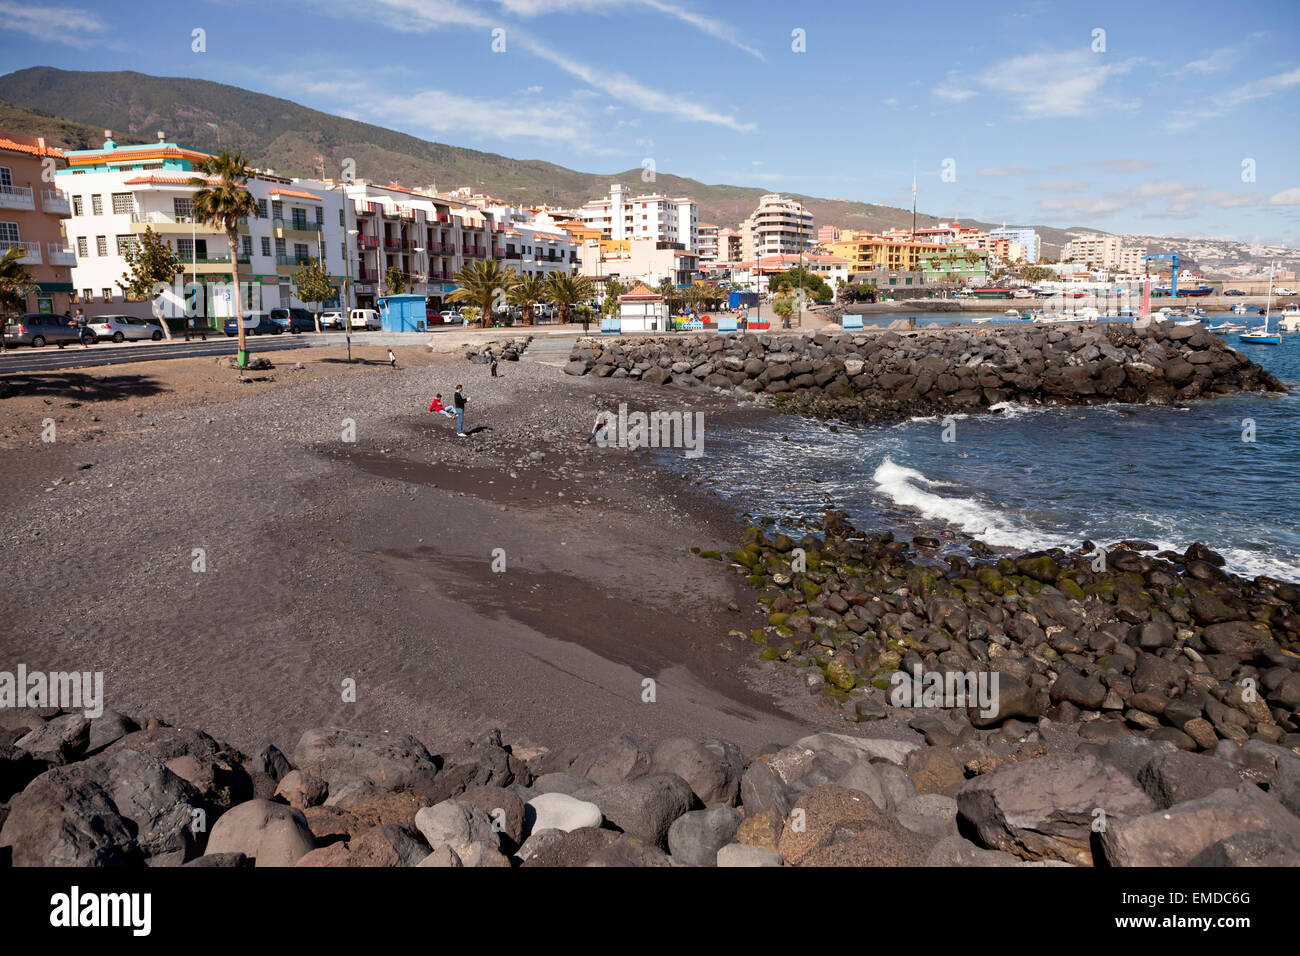 La plage de sable noir dans la région de candelaria, Tenerife, Canaries, Espagne, Europe Banque D'Images